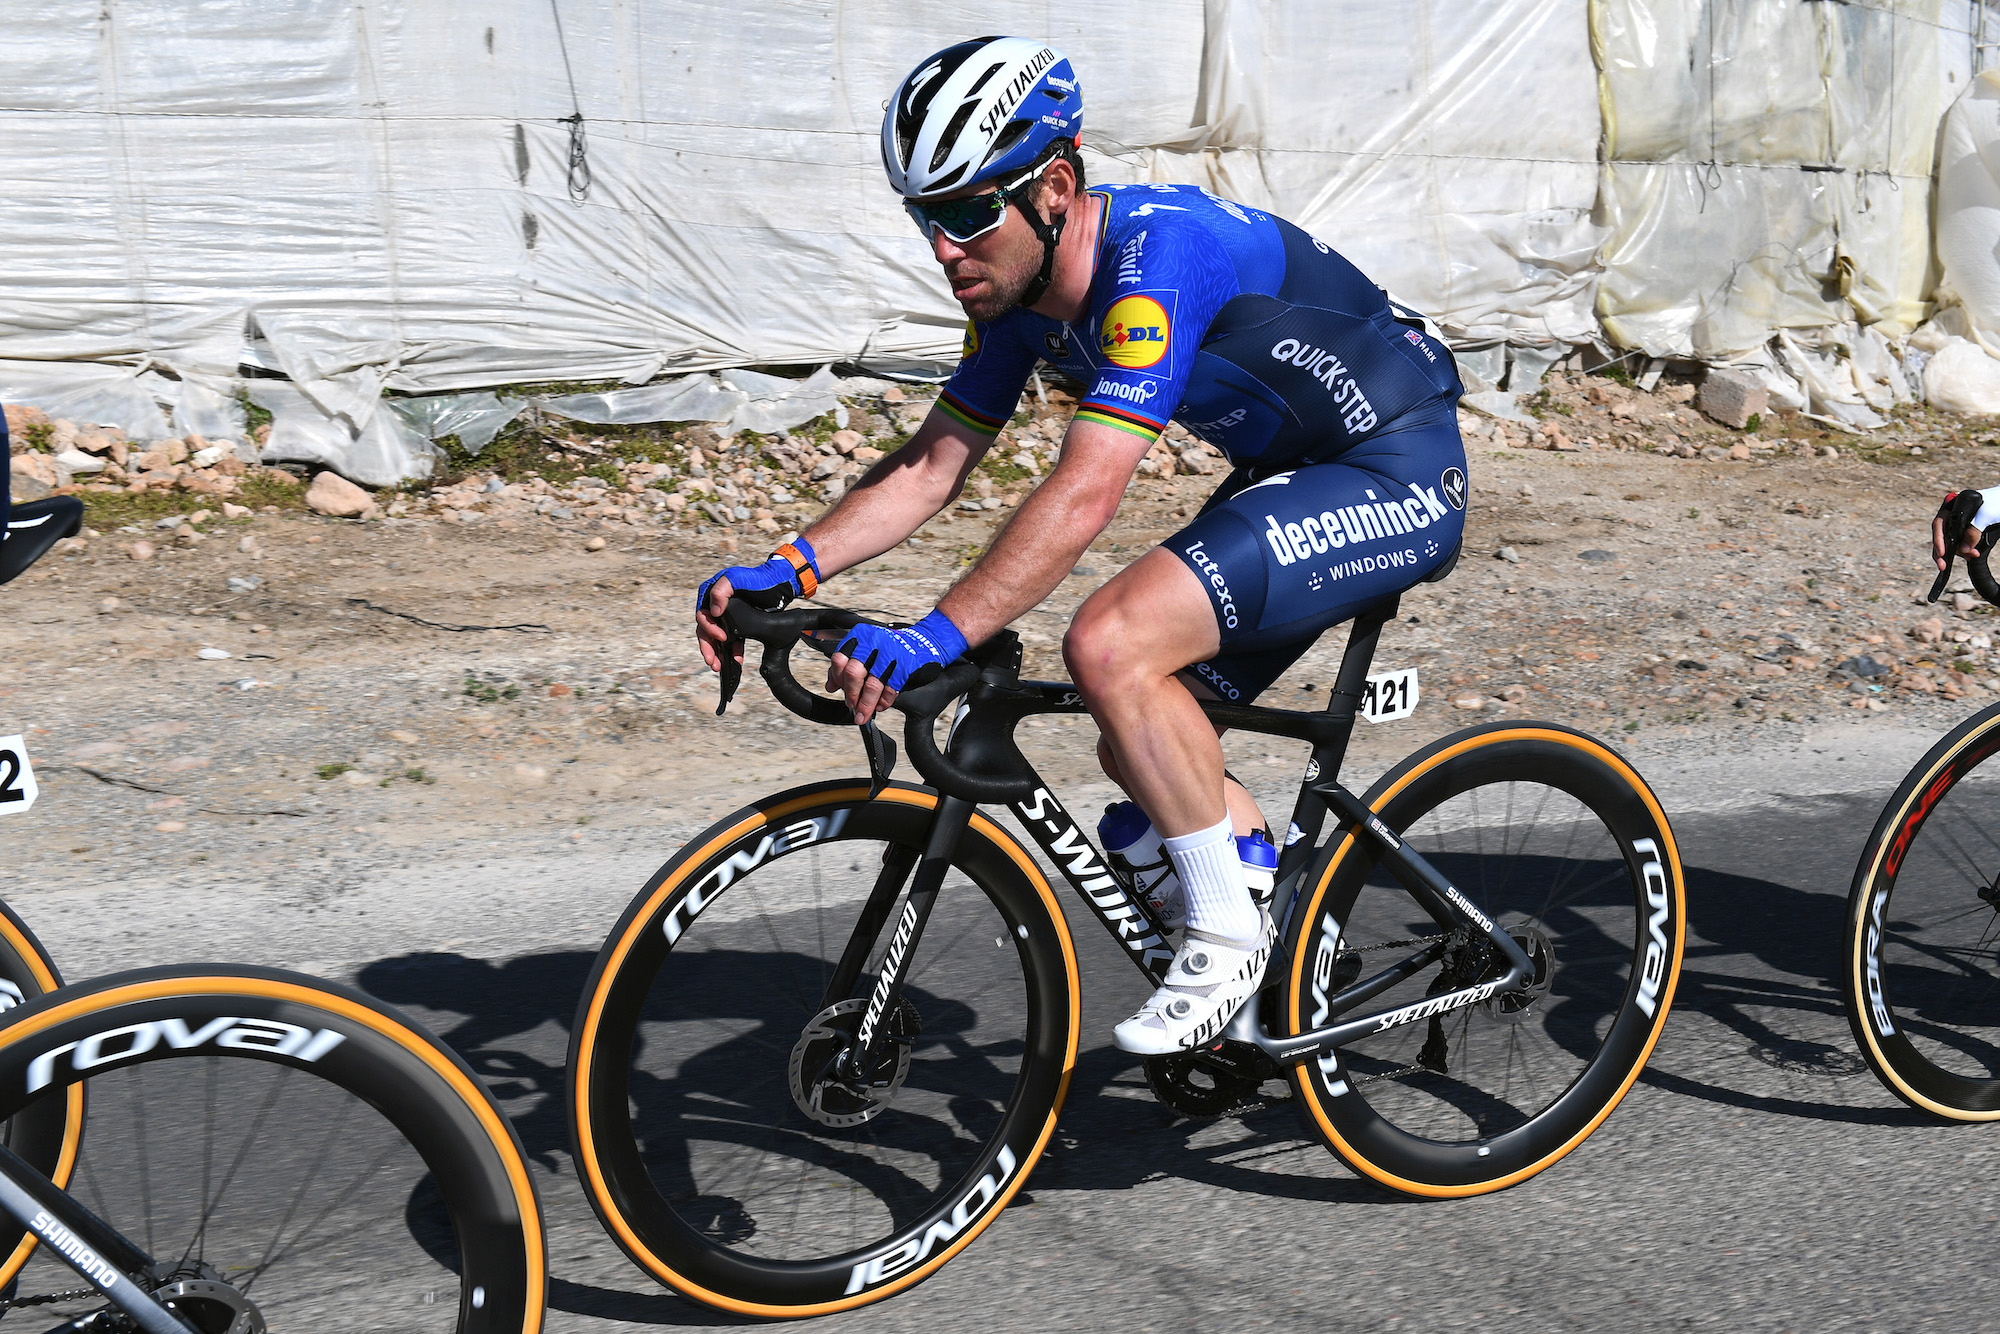 Jakub Mareczko vence a Mark Cavendish en el sprint con foto final en la carrera por etapas en Italia